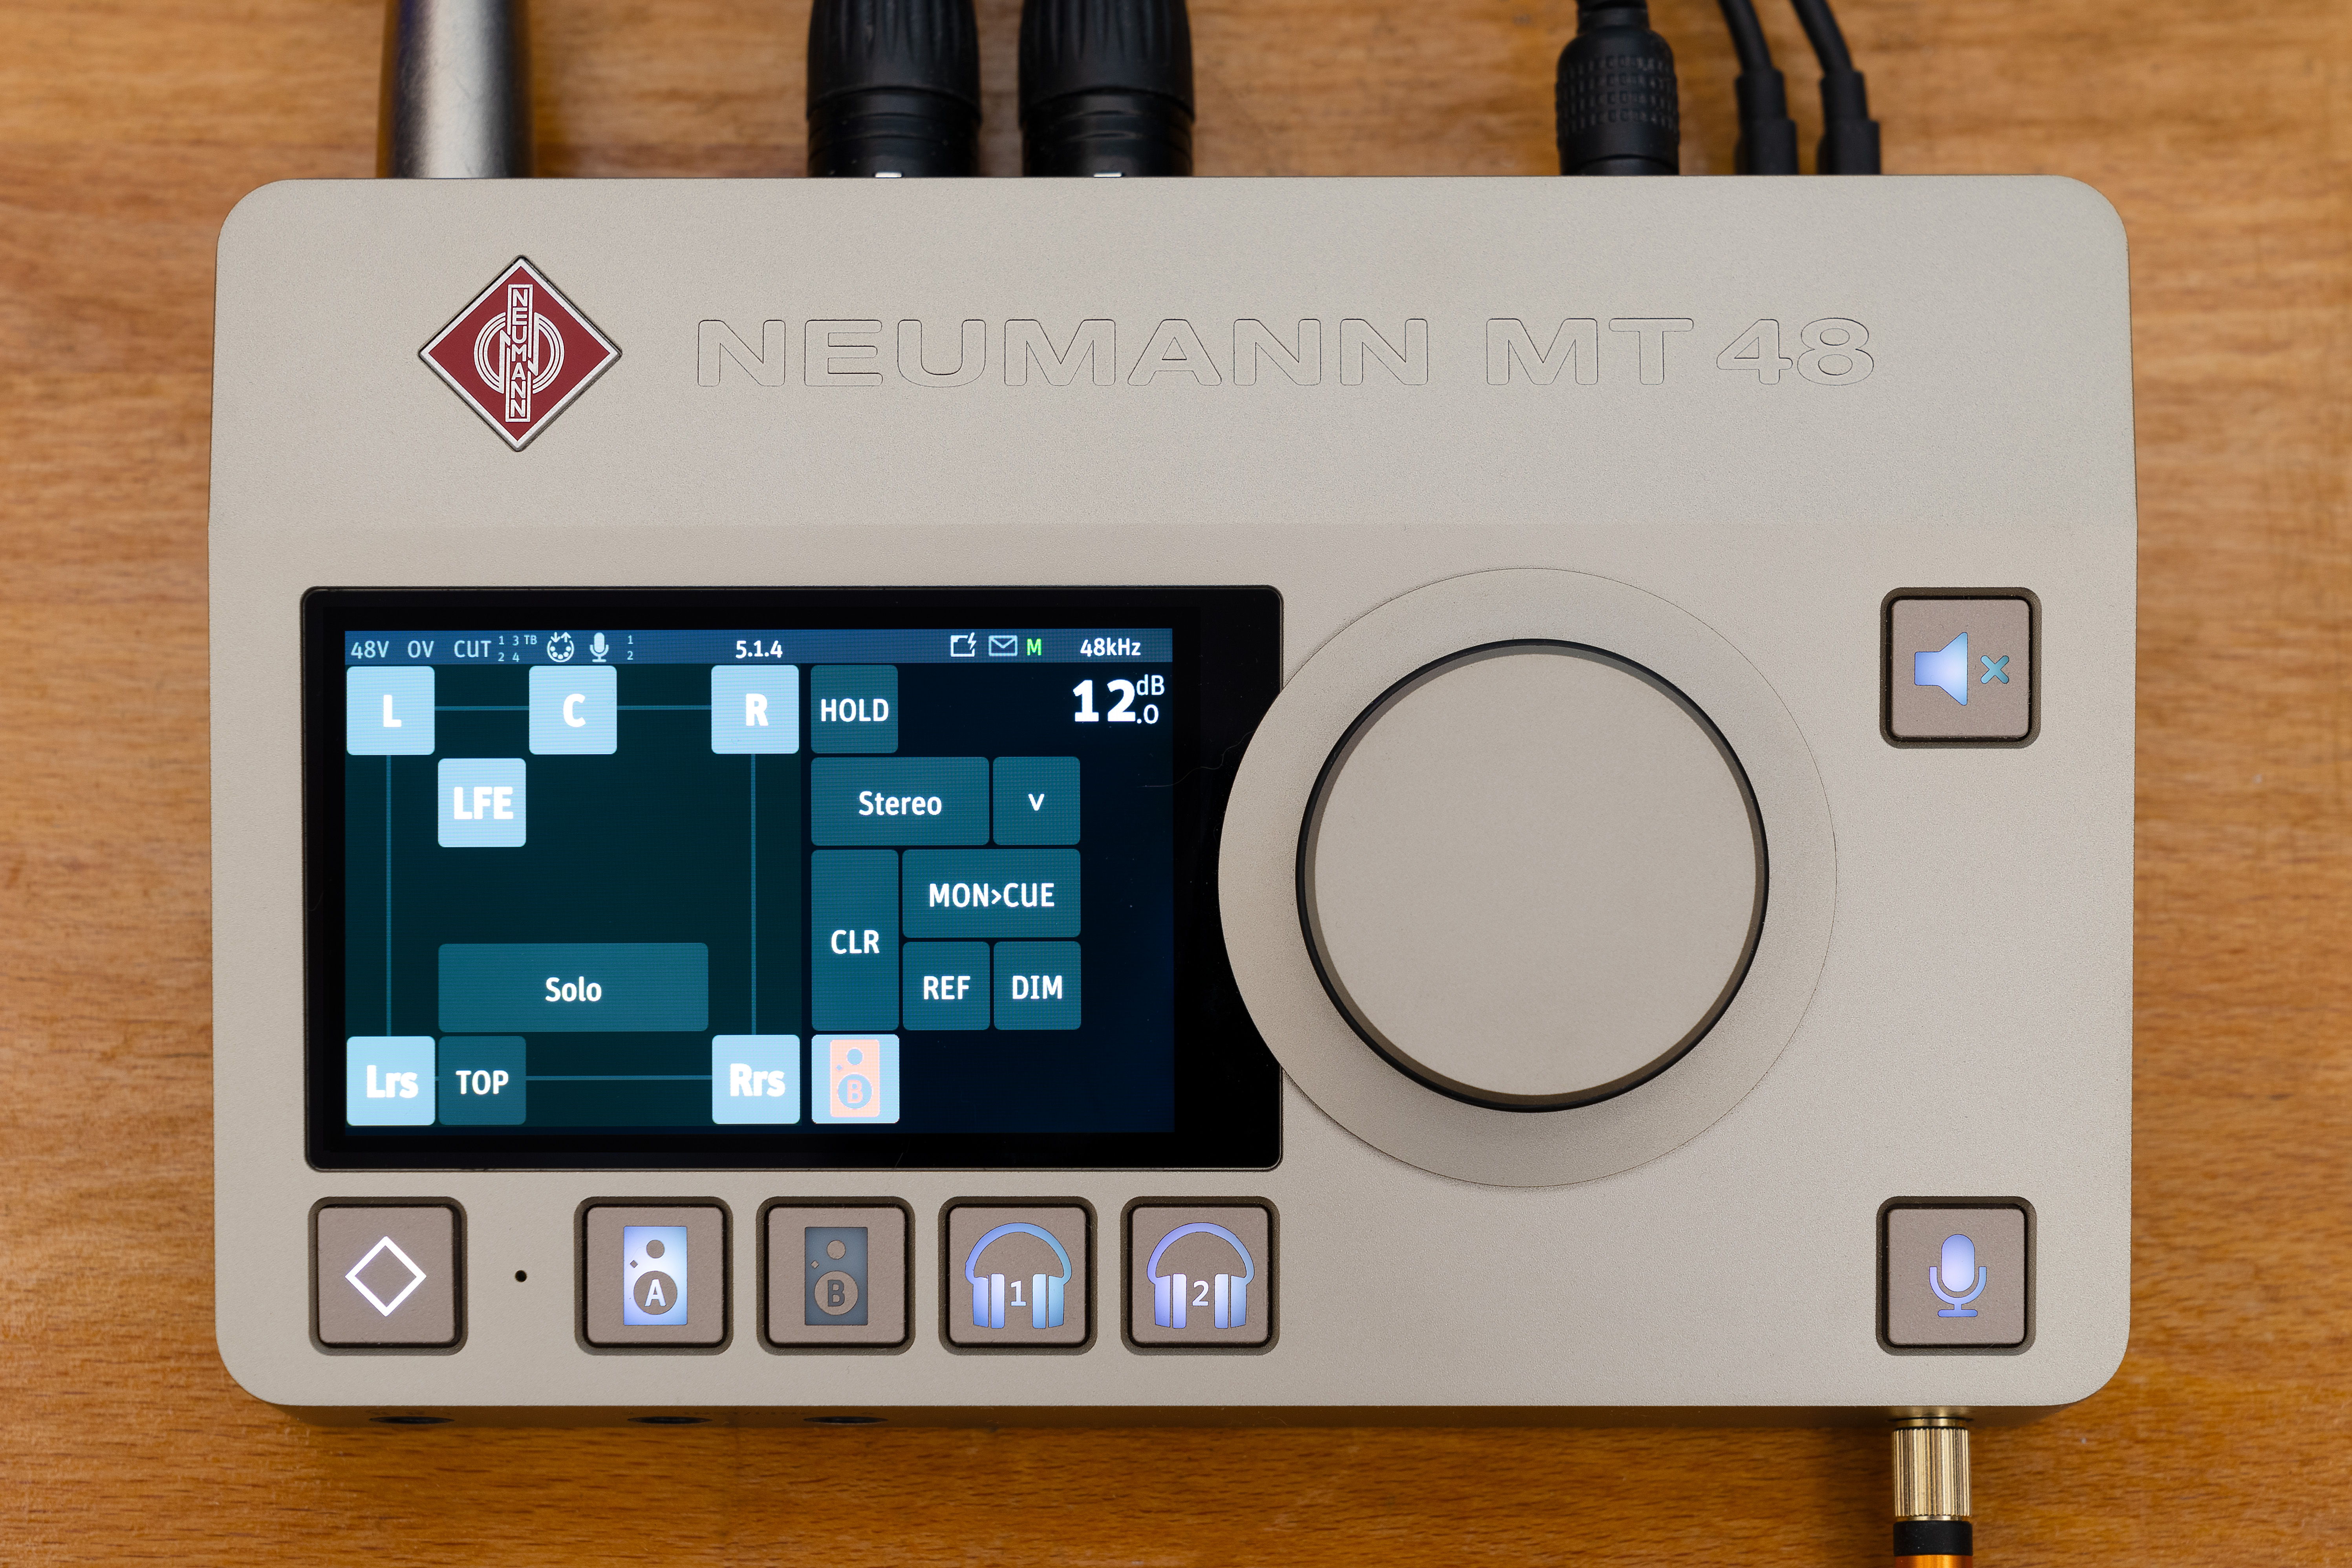 Dankzij de nieuwe functionele update kan je met de Neumann MT 48 audio-interface voortaan in immersieve audioformaten werken